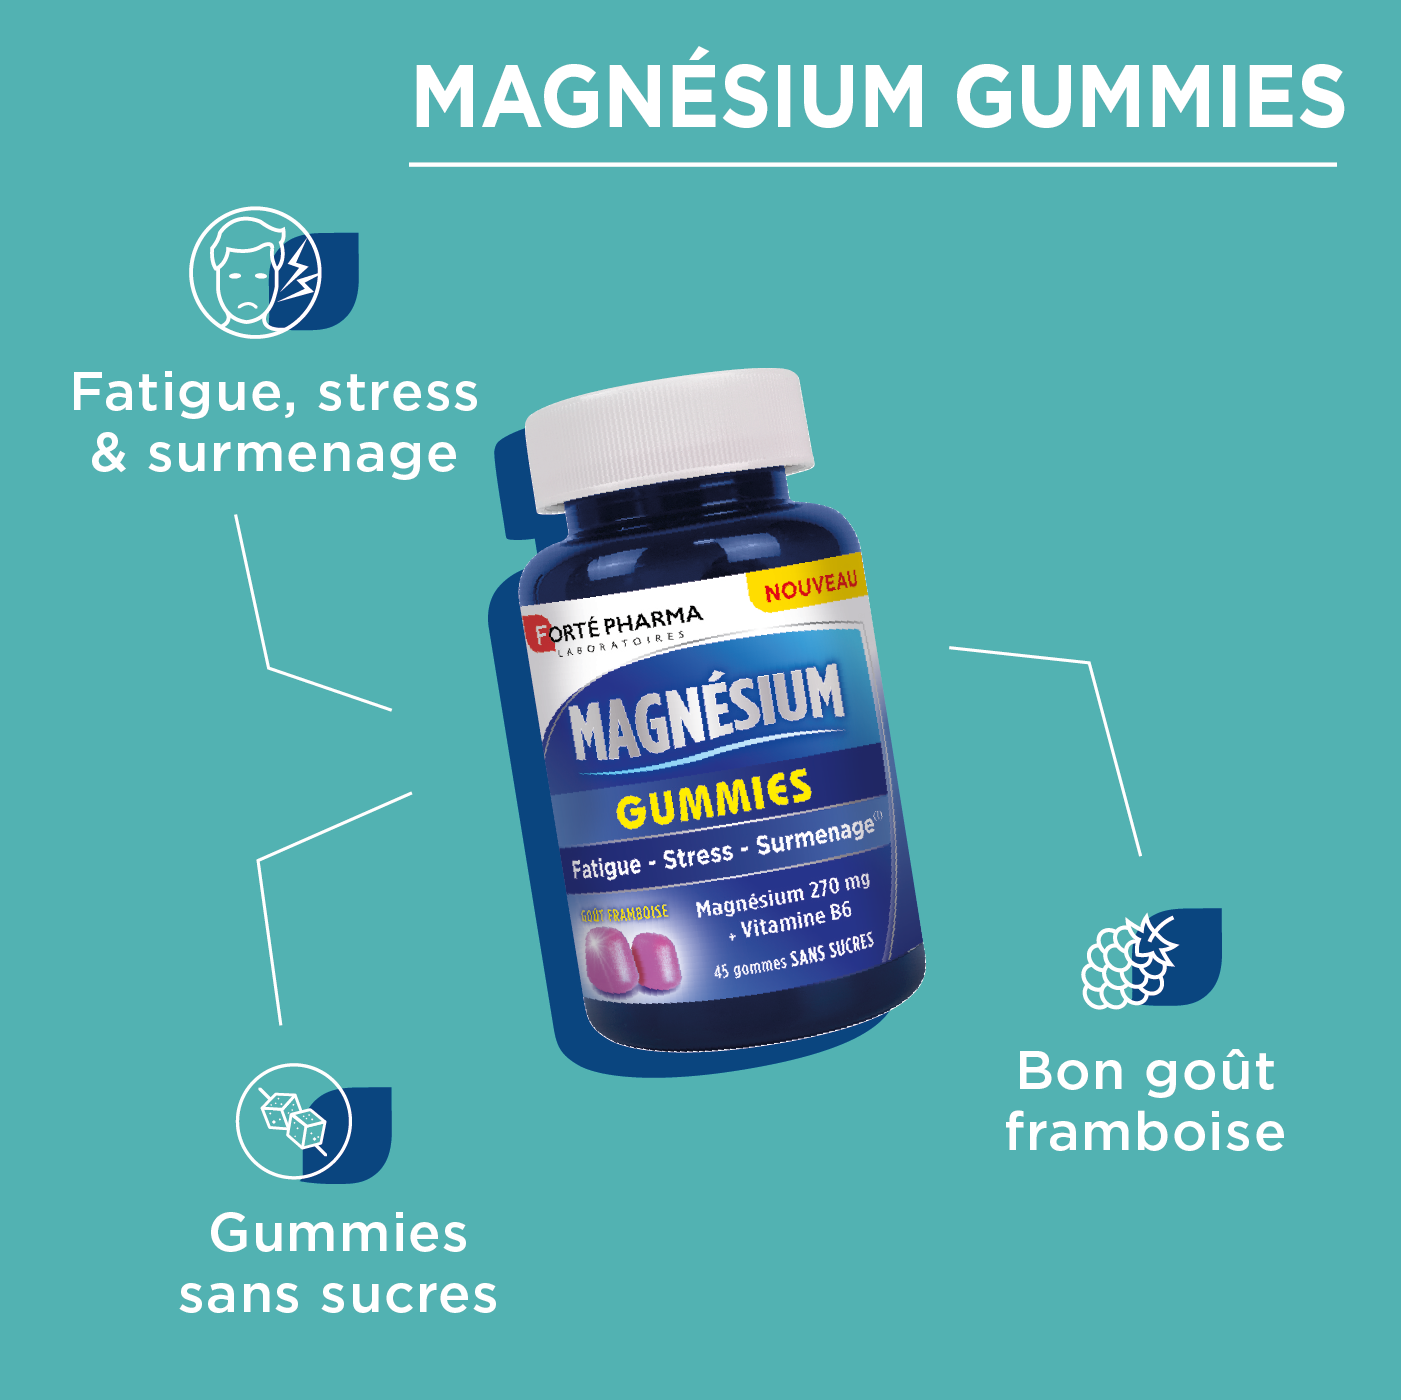 Magnésium gummies fatigue stress surmenage attributs